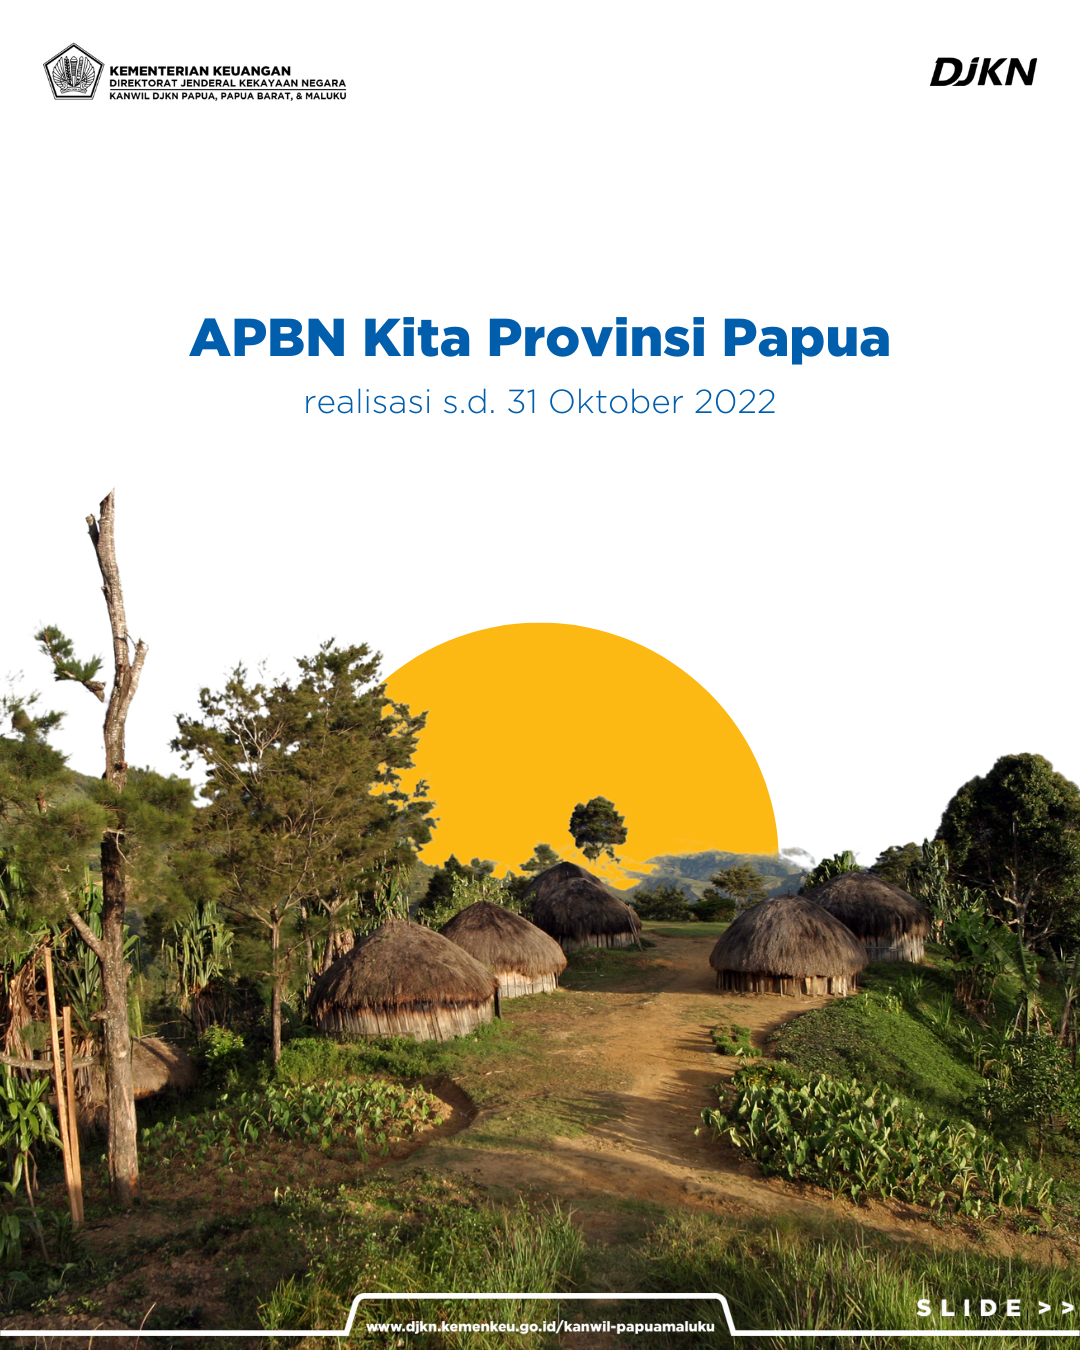 APBN Kita Provinsi Papua Realisasi s.d. 31 Oktober 2022